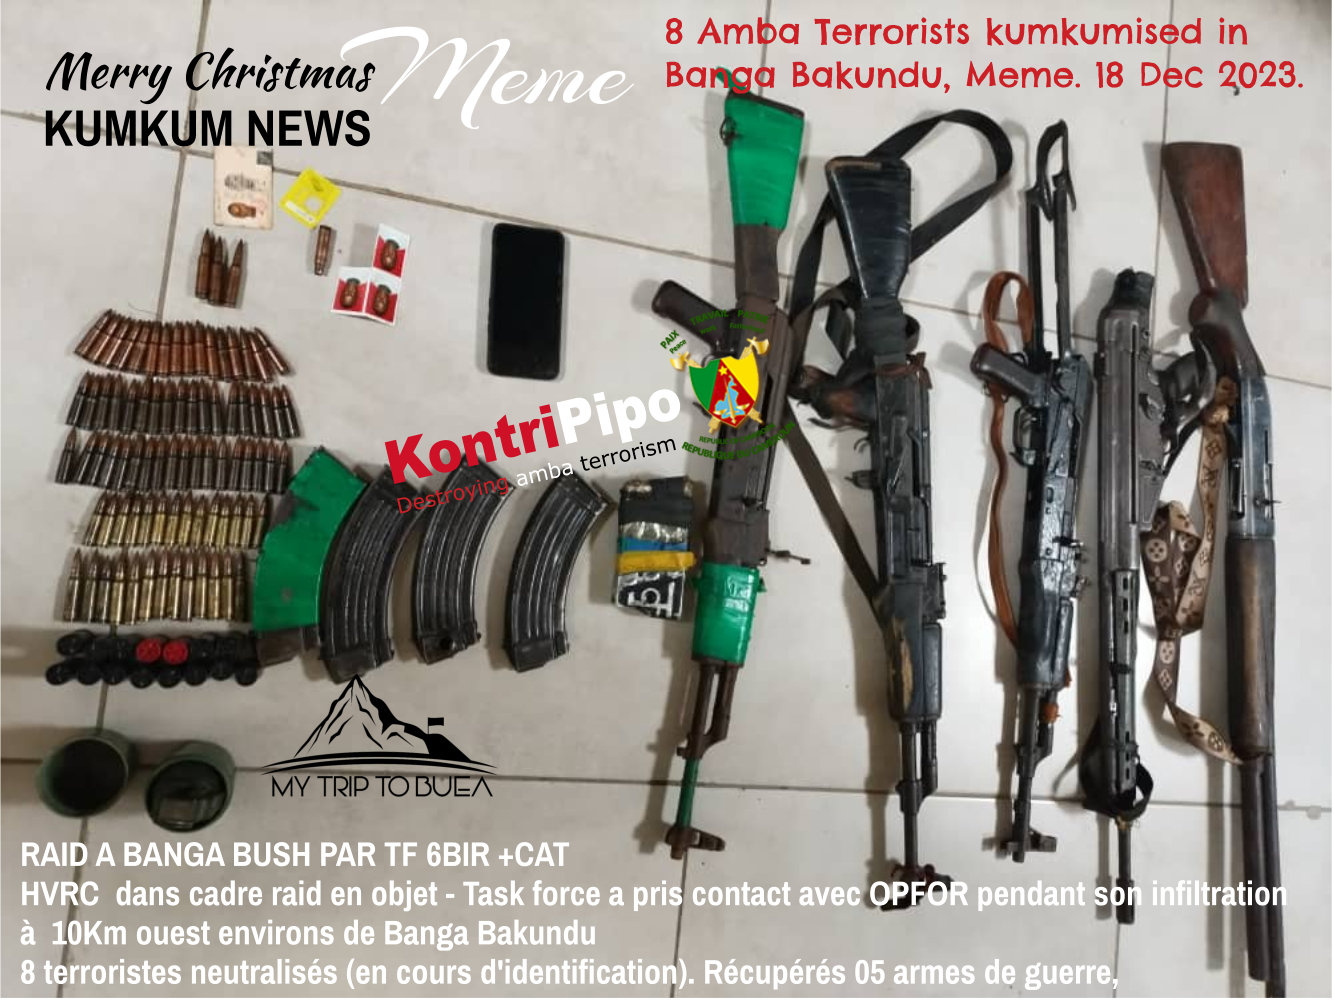 8 Terrorists kumkumised in Banga Bakundu on 18 Dec 2023